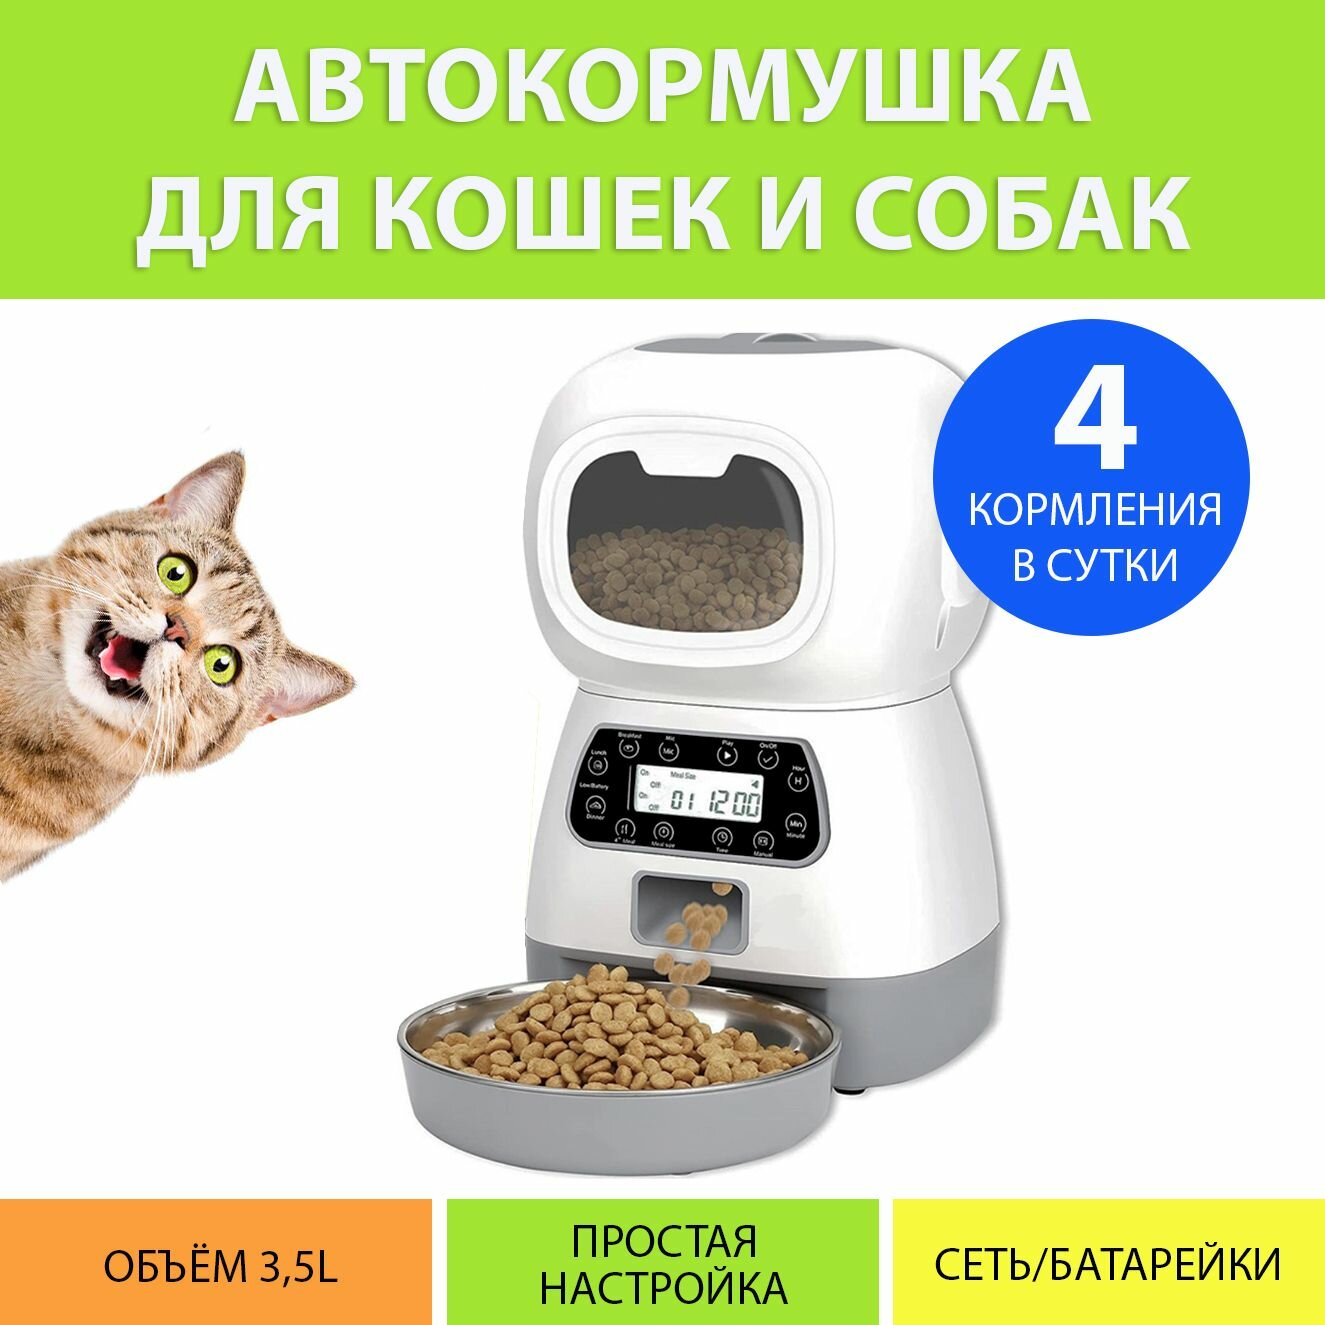 Автоматическая кормушка для кошек 3.5 литра, с таймером кормления